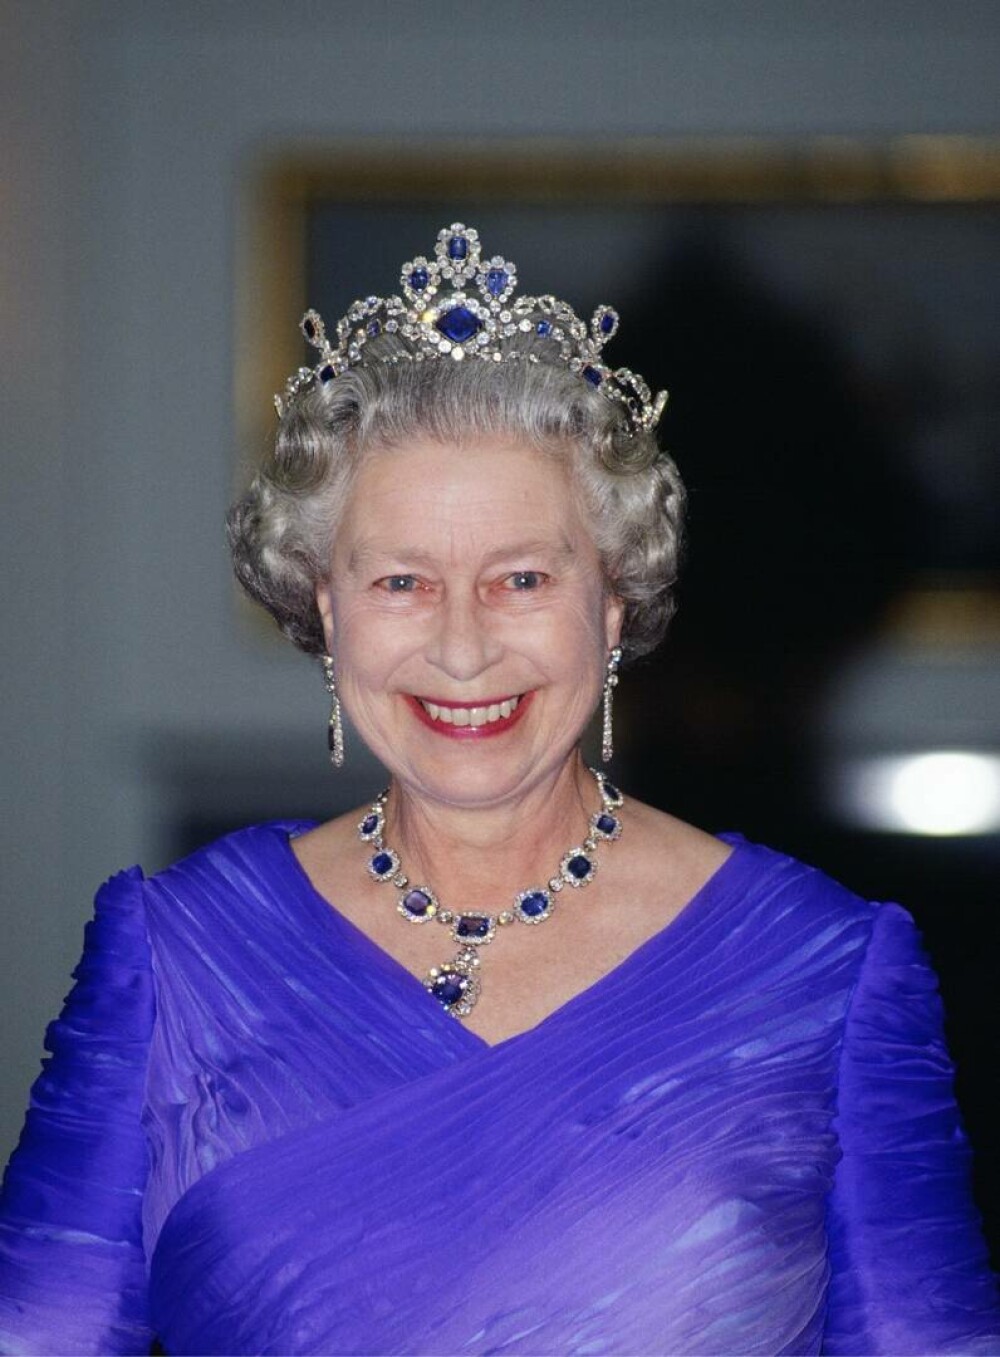 Colecția personală de bijuterii a reginei Elisabeta a II-a: De la colierele de perle, la zecile de broșe cu diamante FOTO - Imaginea 15